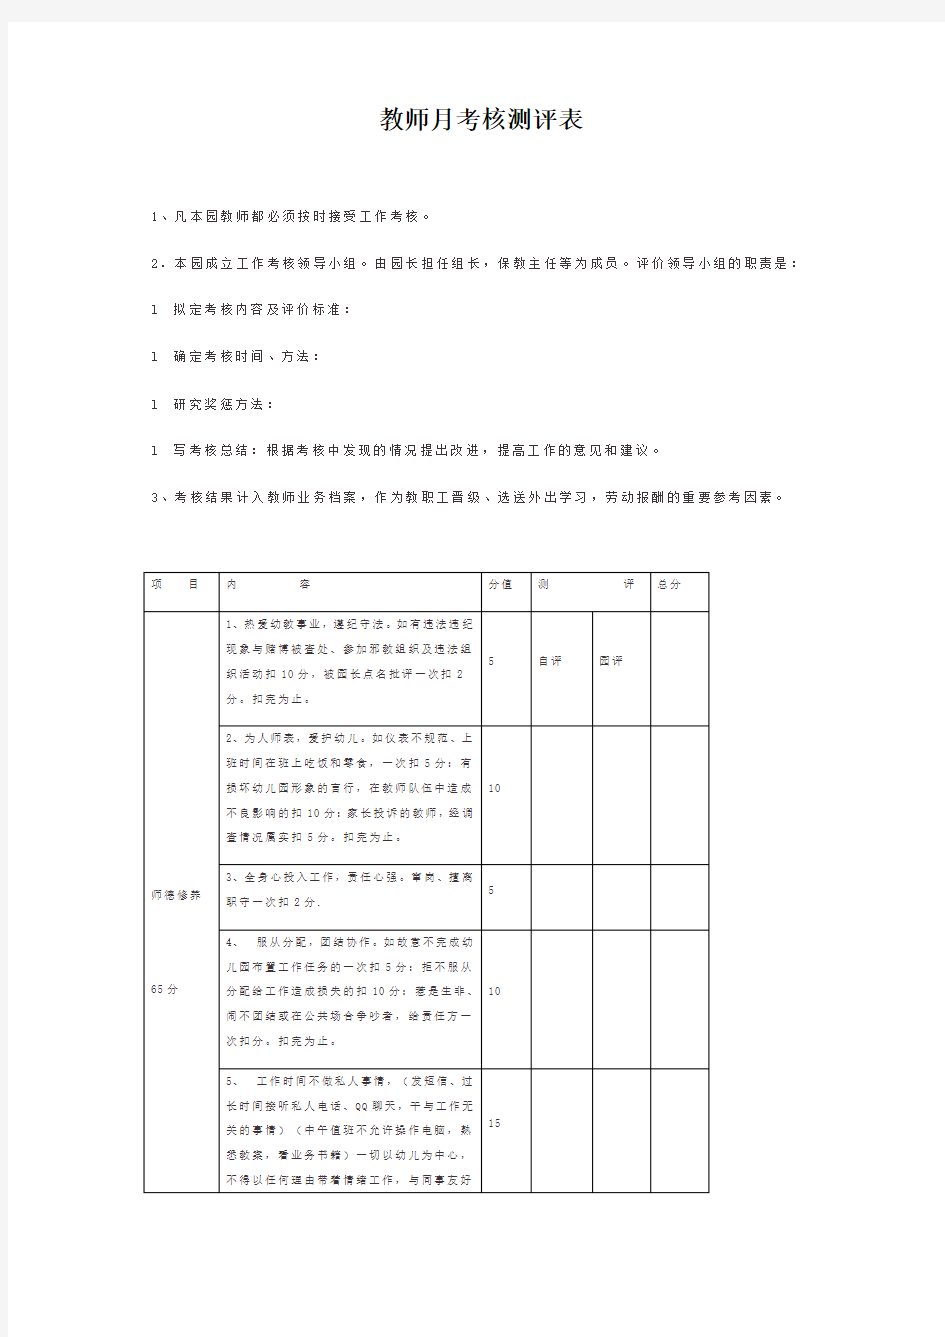 【幼儿园行政管理】教师月考核测评表